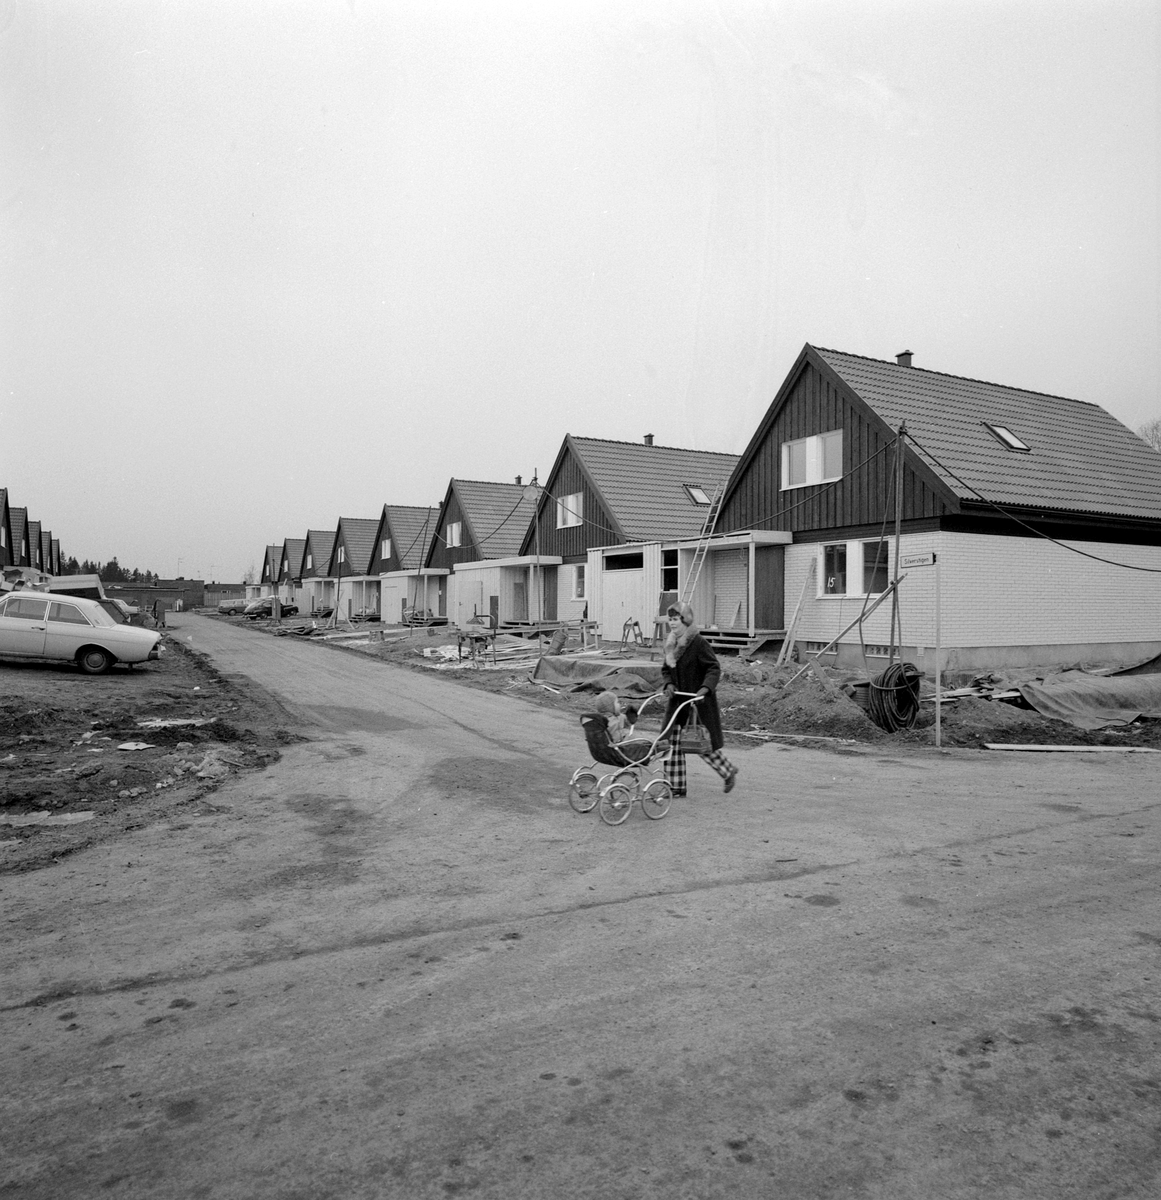 Mars månad 1973 och KB-villorna utmed Silverstigen i Linköping är snart inflyttningsklara. Bakom husens benämning stod firma KB-bygg som grundats 1964 av byggmästarna Lars Kvissberg och Carl-Owe Bäckström. I slutet av 1960-talet hade de bägge herrarna vunnit anbudstävlingen kring att uppföra 261 villor i stadsdelen Ryd. Den speciella KB-villan togs fram och konstruerades med fribärade takstolar och avsaknad av bärande väggar i såväl botten- som övervåningen. Det möjliggjorde en unik flexibilitet av varje villas planlösningen vilket gav köparna stora möjligheter att påverka rumsindelningen. KB-villan gjorde stort intryck på bomässan i Norrköping 1971 och året därpå utsåg tidningen Allt i Hemmet KB-villan till "Årets hus". En succé var född.